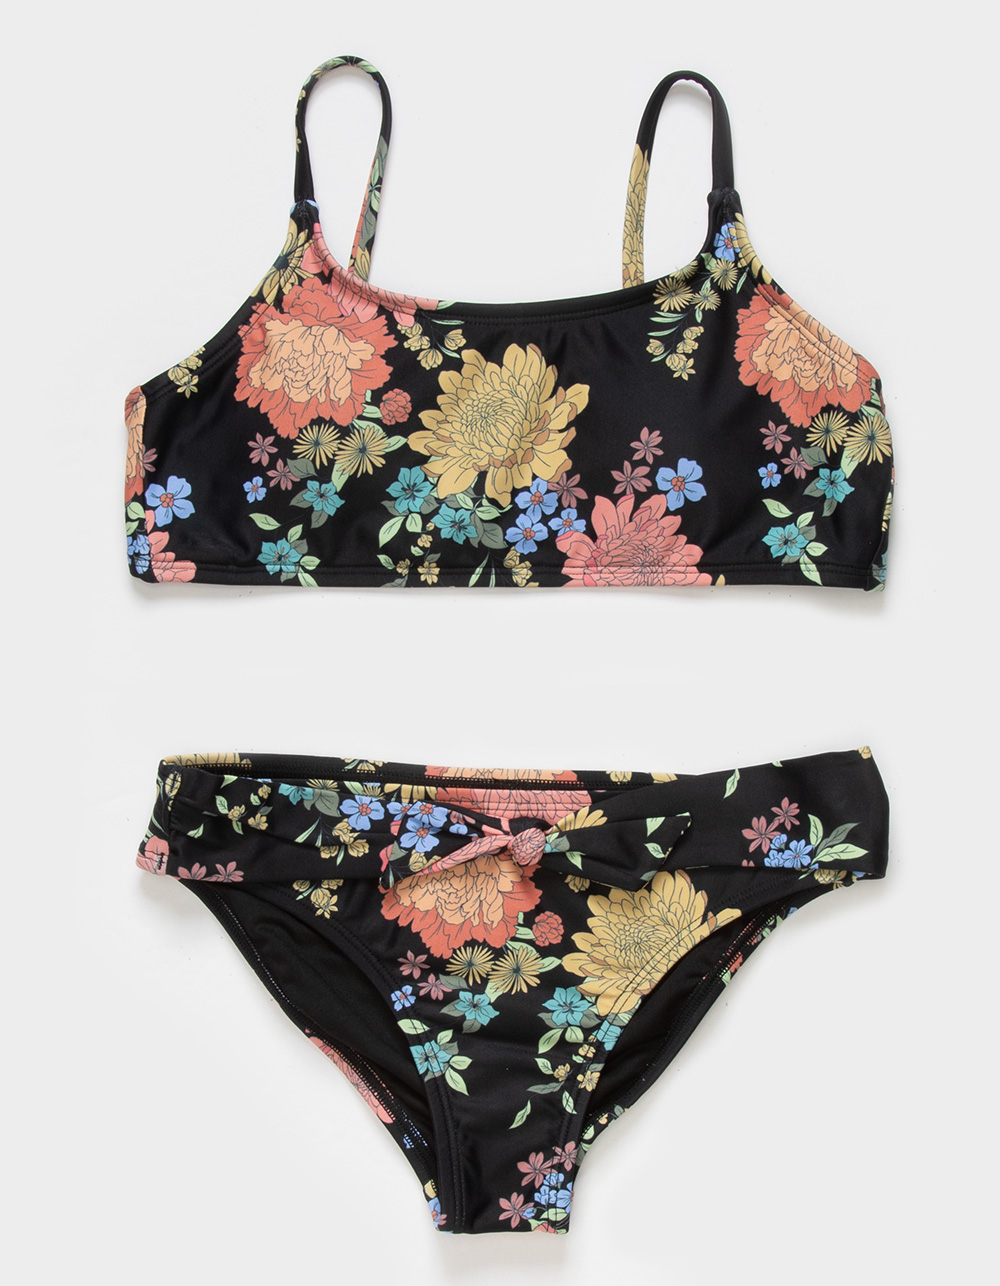 O'NEILL Kali Floral Girls Bralette Bikini Set